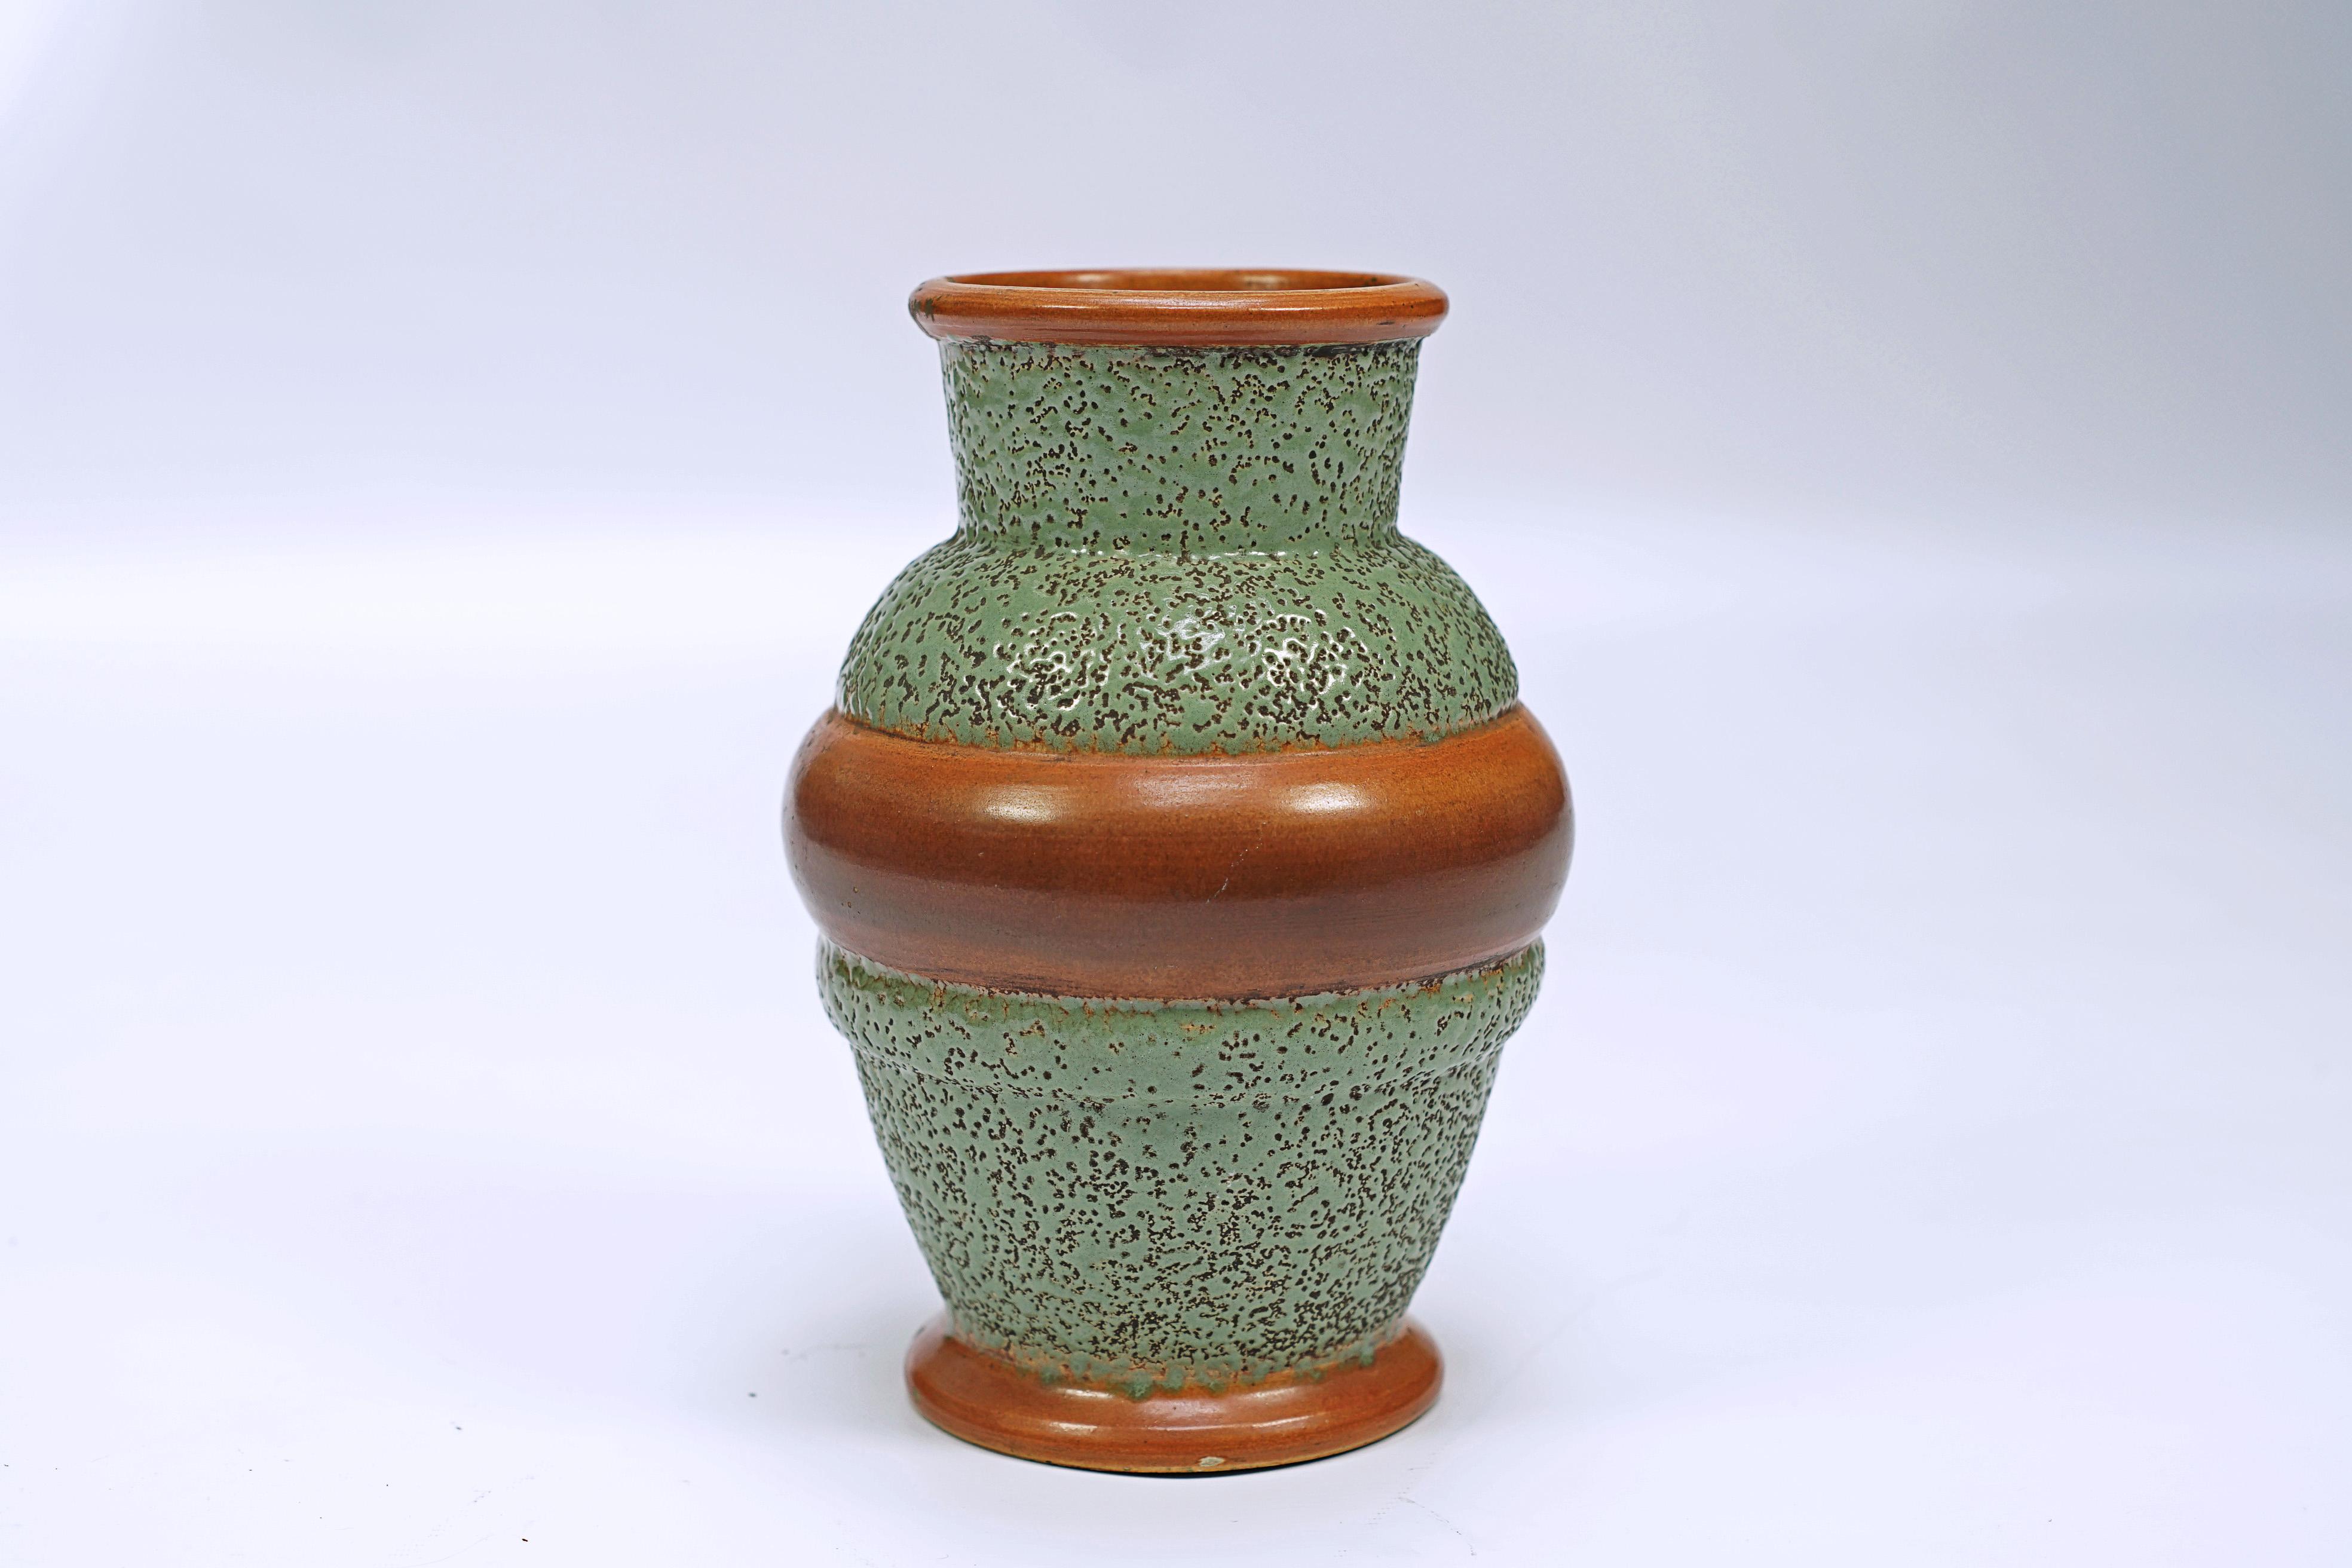 Keramikvase mit verschiedenen Strukturen, in grün und braun, von Jean Besnad (1889 -1958) Signiert JB Made in France.

Frankreich, CIRCA 1930.